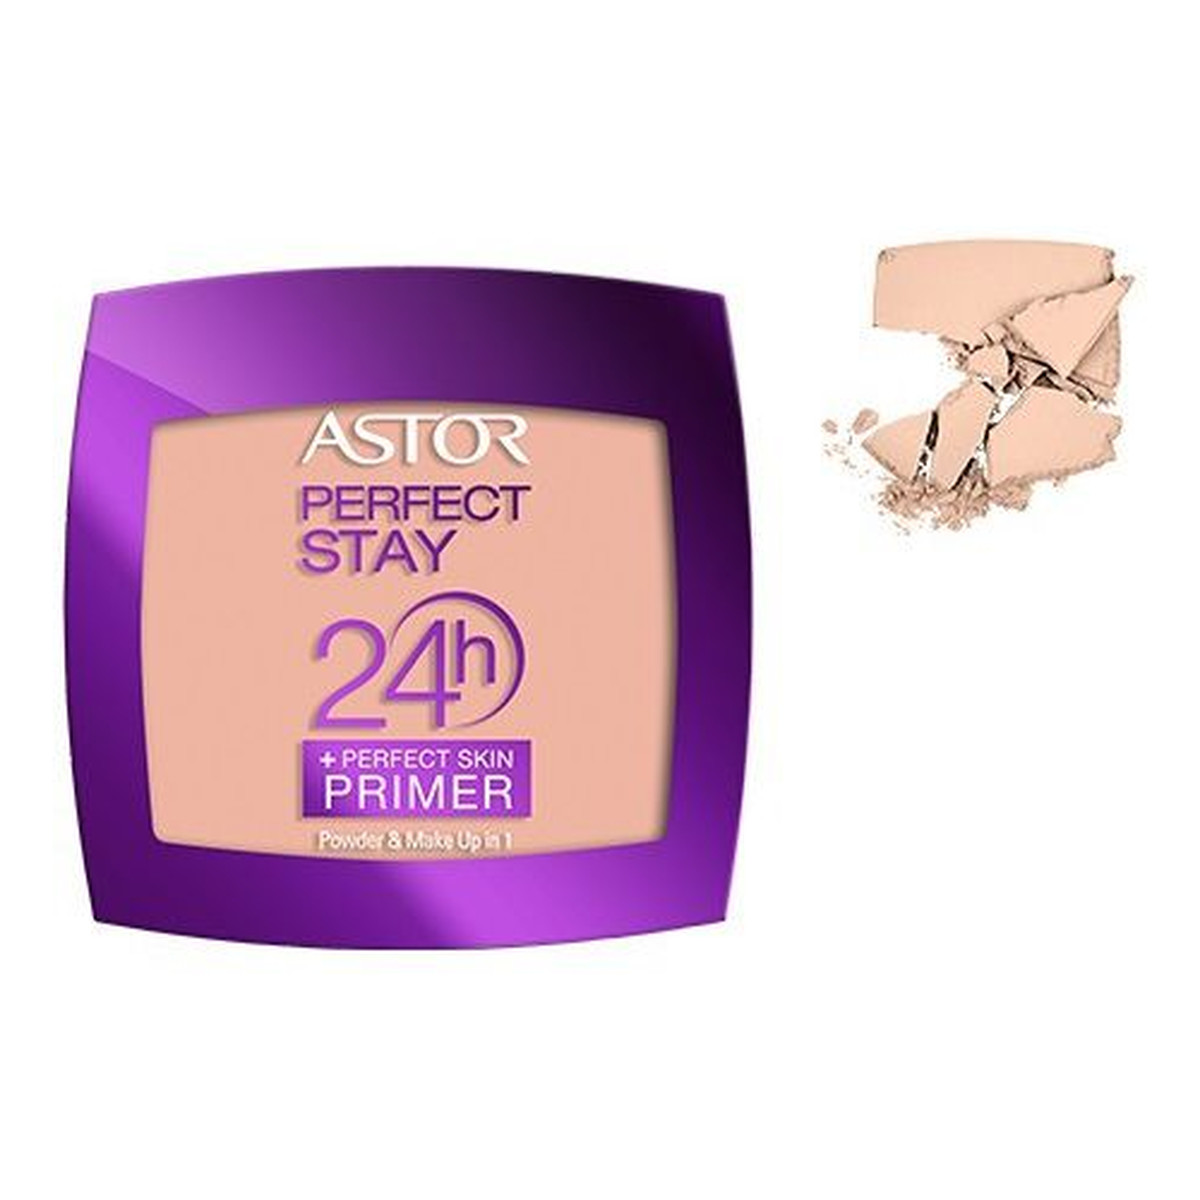 Astor PERFECT STAY 24H Powder + Perfect Skin Primer długotrwały puder z bazą 7g